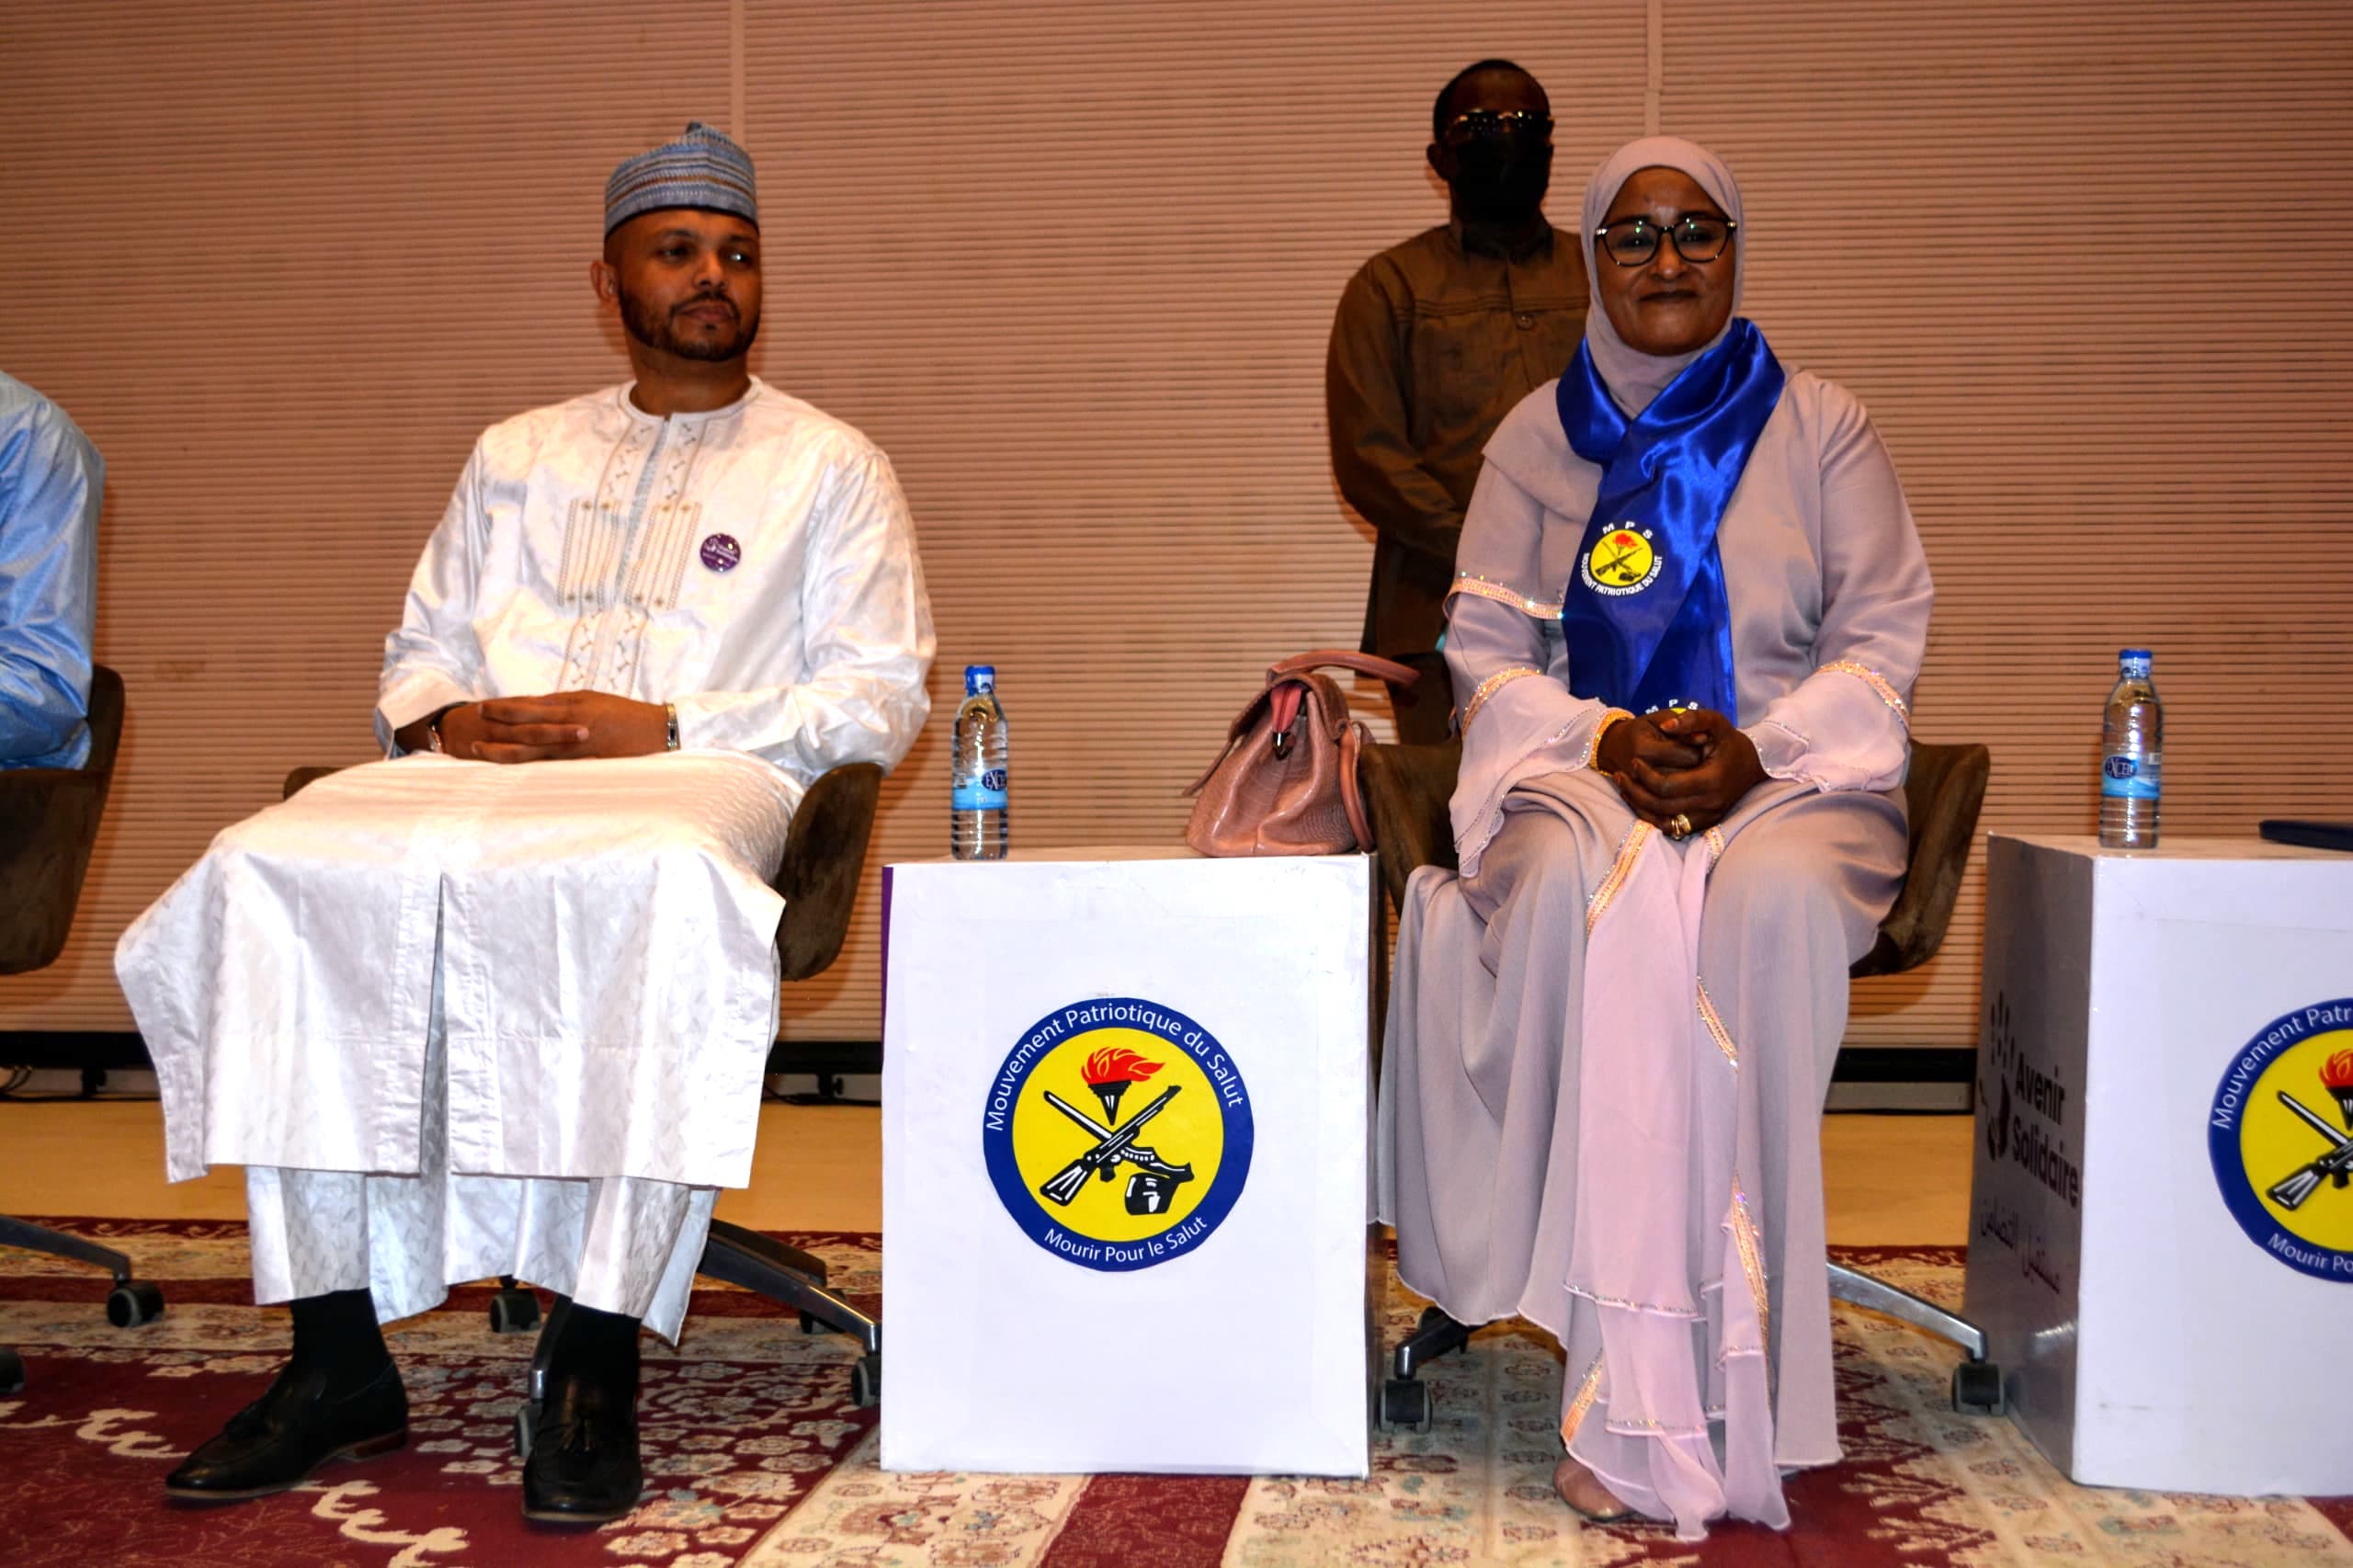 ​Tchad : lancement officiel du bureau de soutien "Avenir Solidaire"